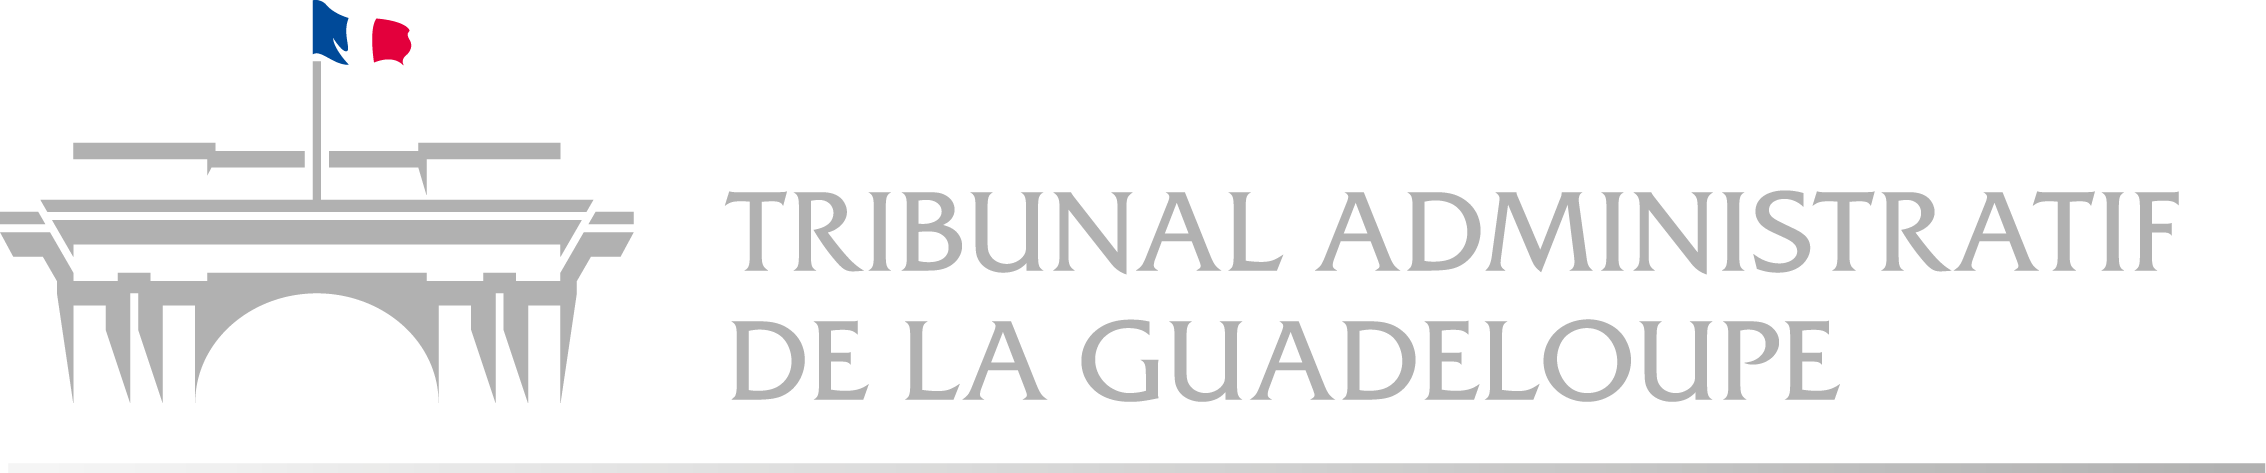 Tribunal administratif de Guadeloupe - Retour à l'accueil